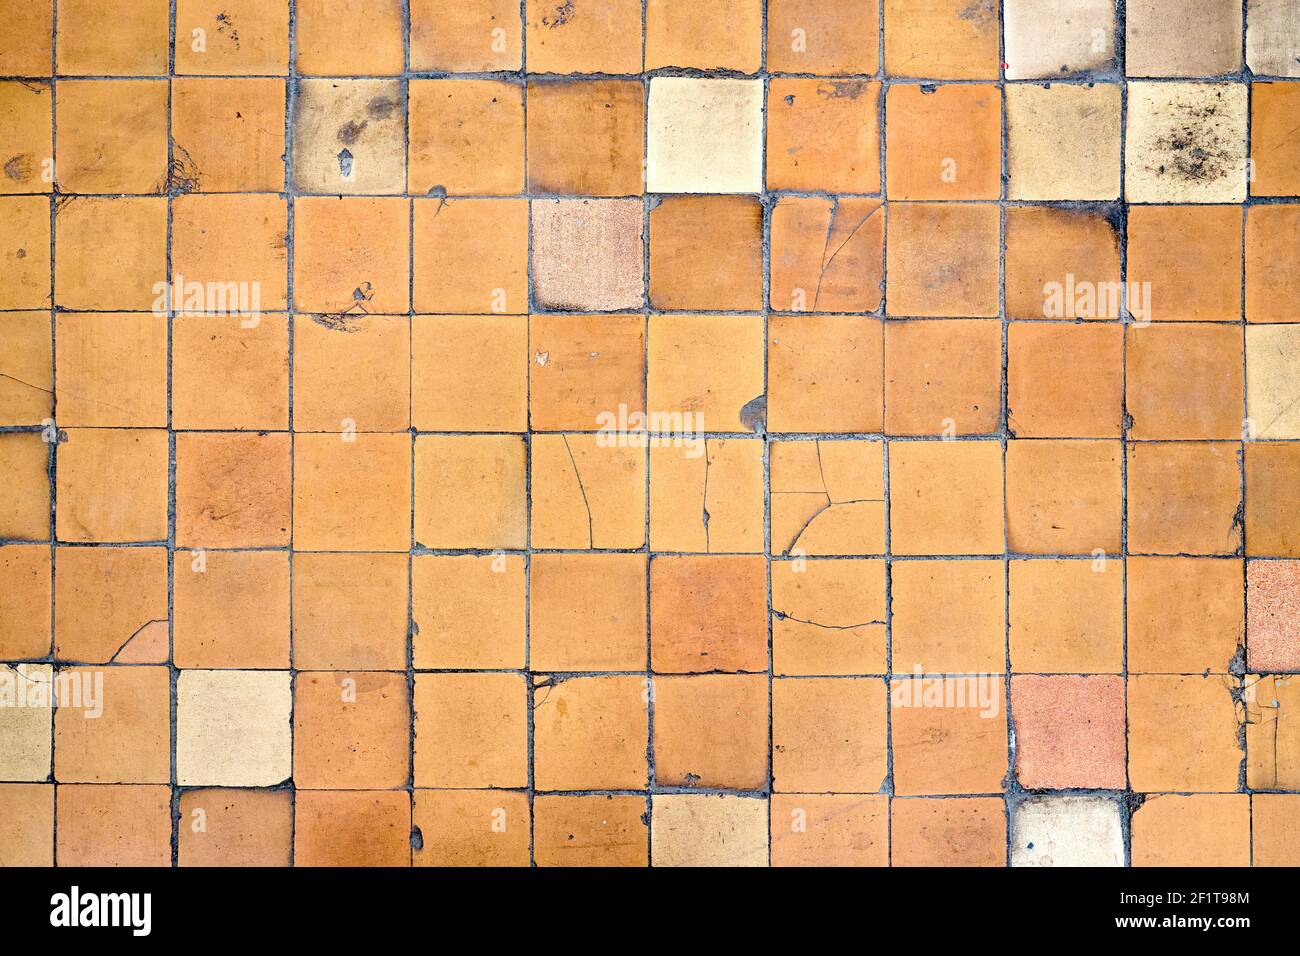 Arancio marrone bianco beige vecchio shabby usurato pavimento piastrelle con danni crepe caverne sporco buche e macchie di vernice. Texture di sfondo del disegno artistico. Foto Stock